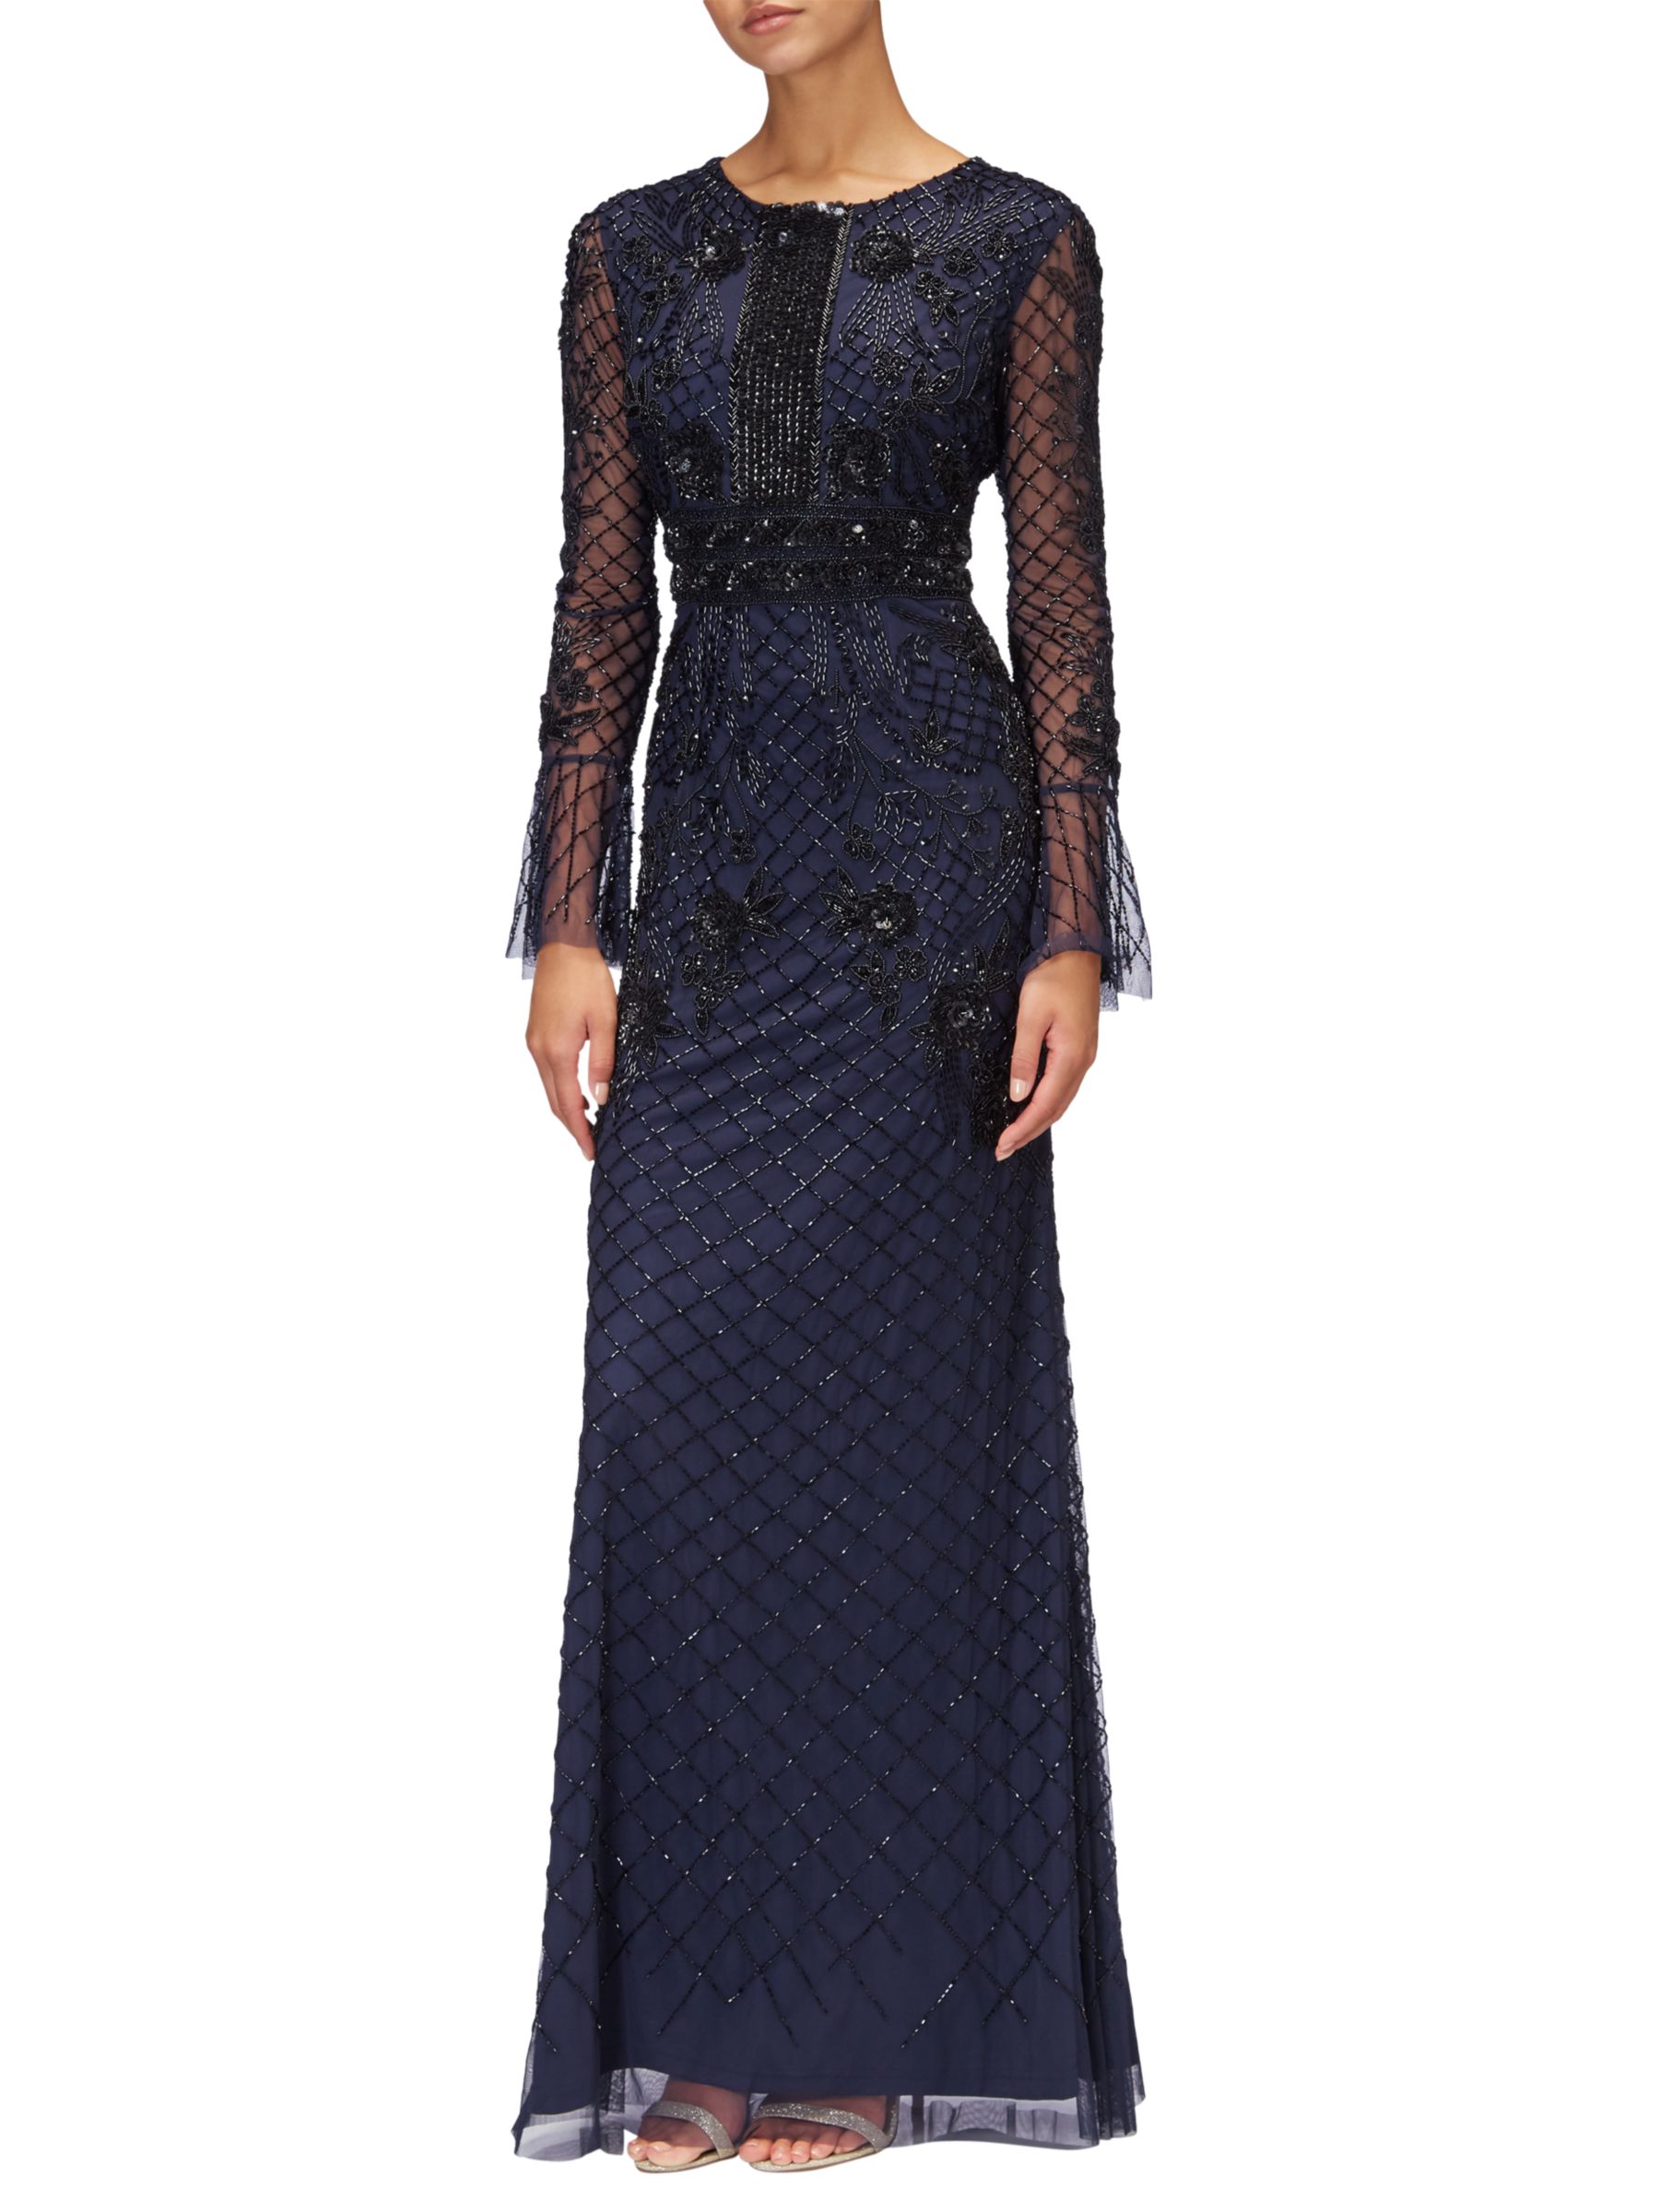 Adrianna Papell Long Beaded Dress, Navy/Black